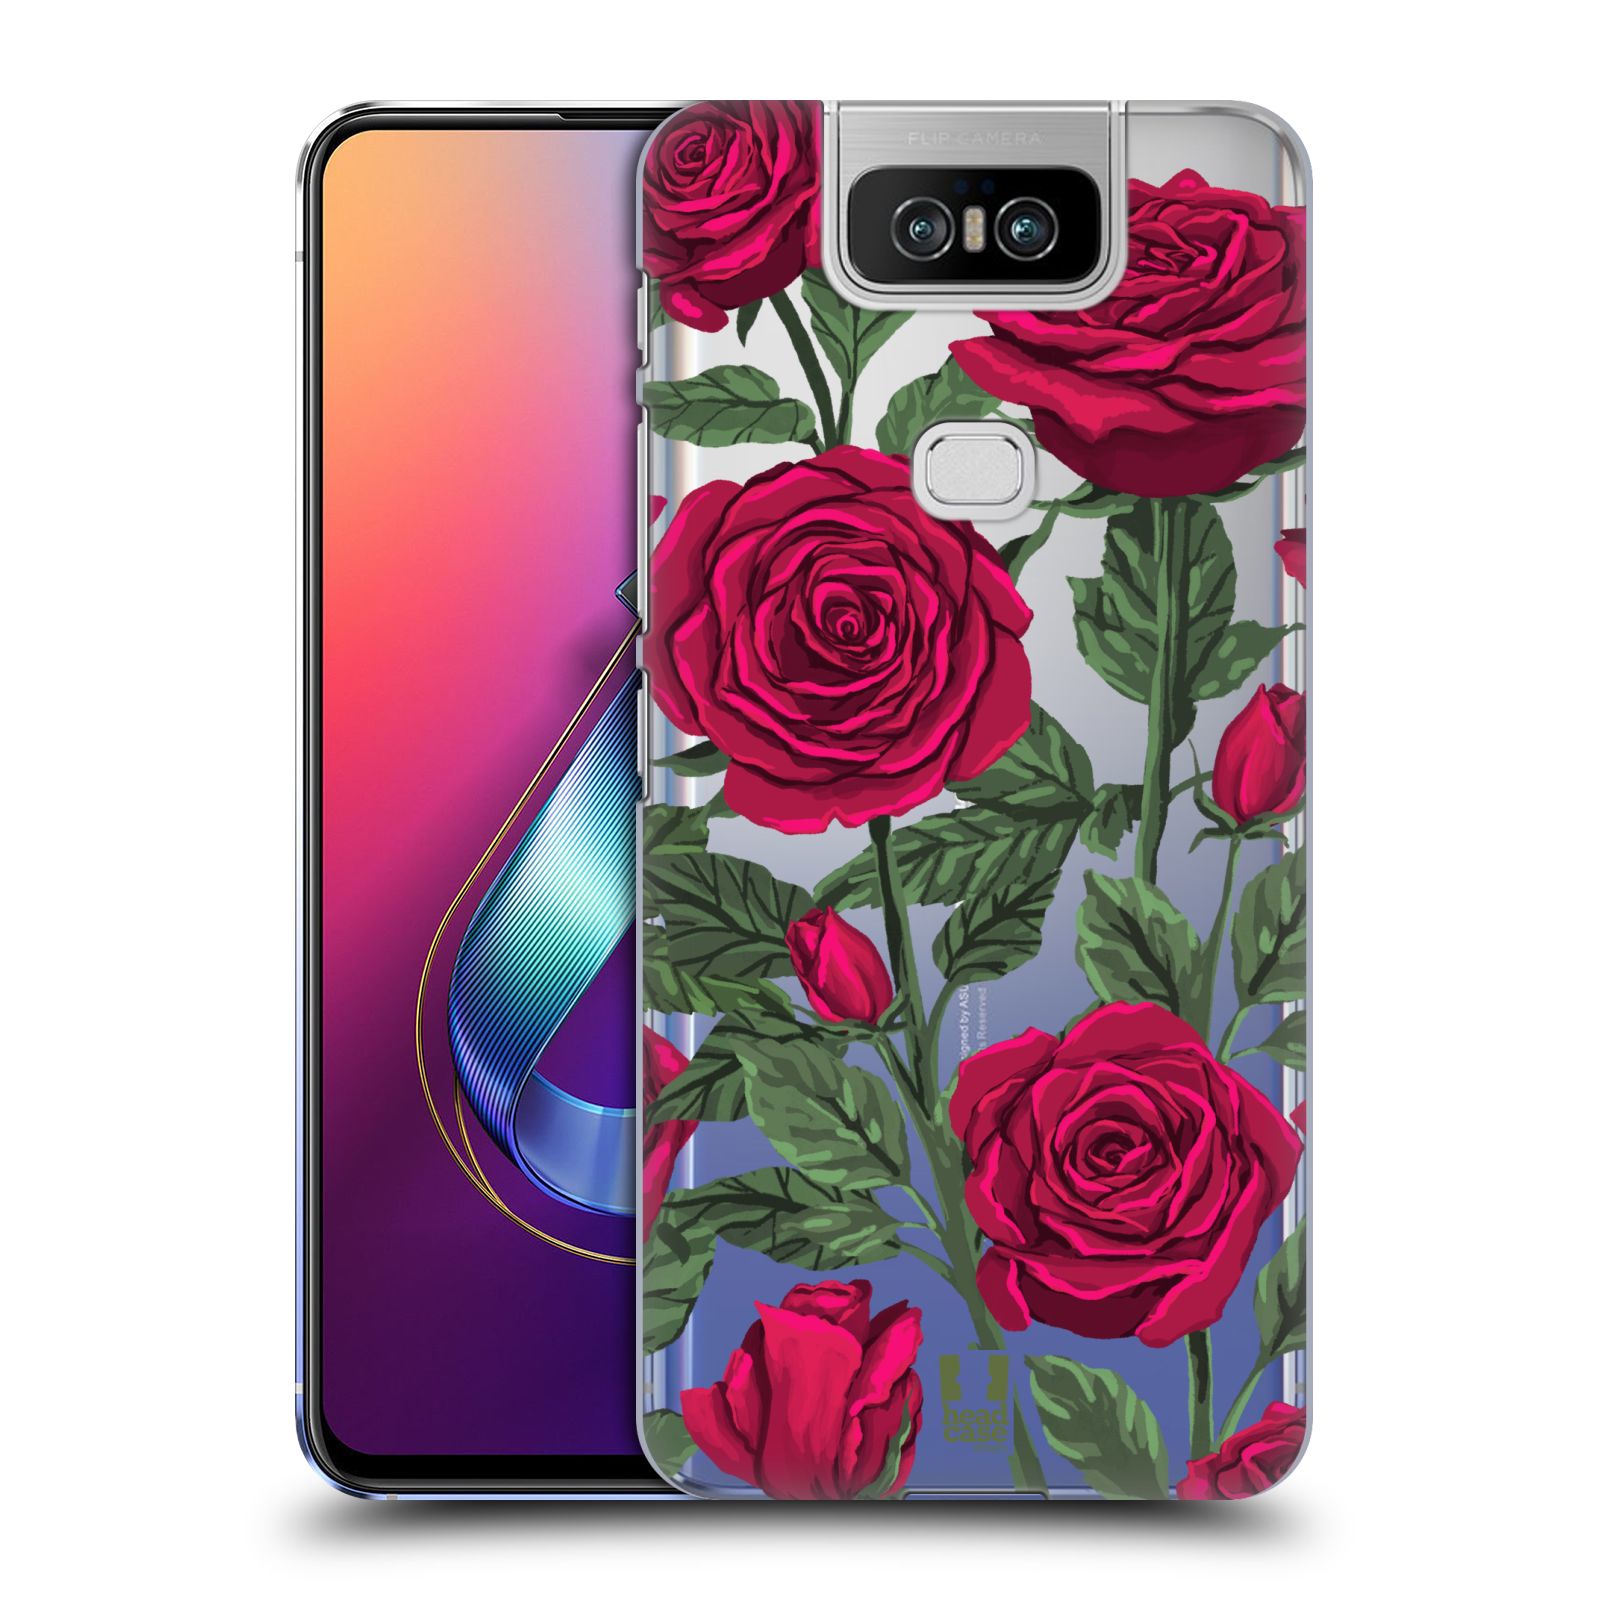 Pouzdro na mobil Asus Zenfone 6 ZS630KL - HEAD CASE - květina růže